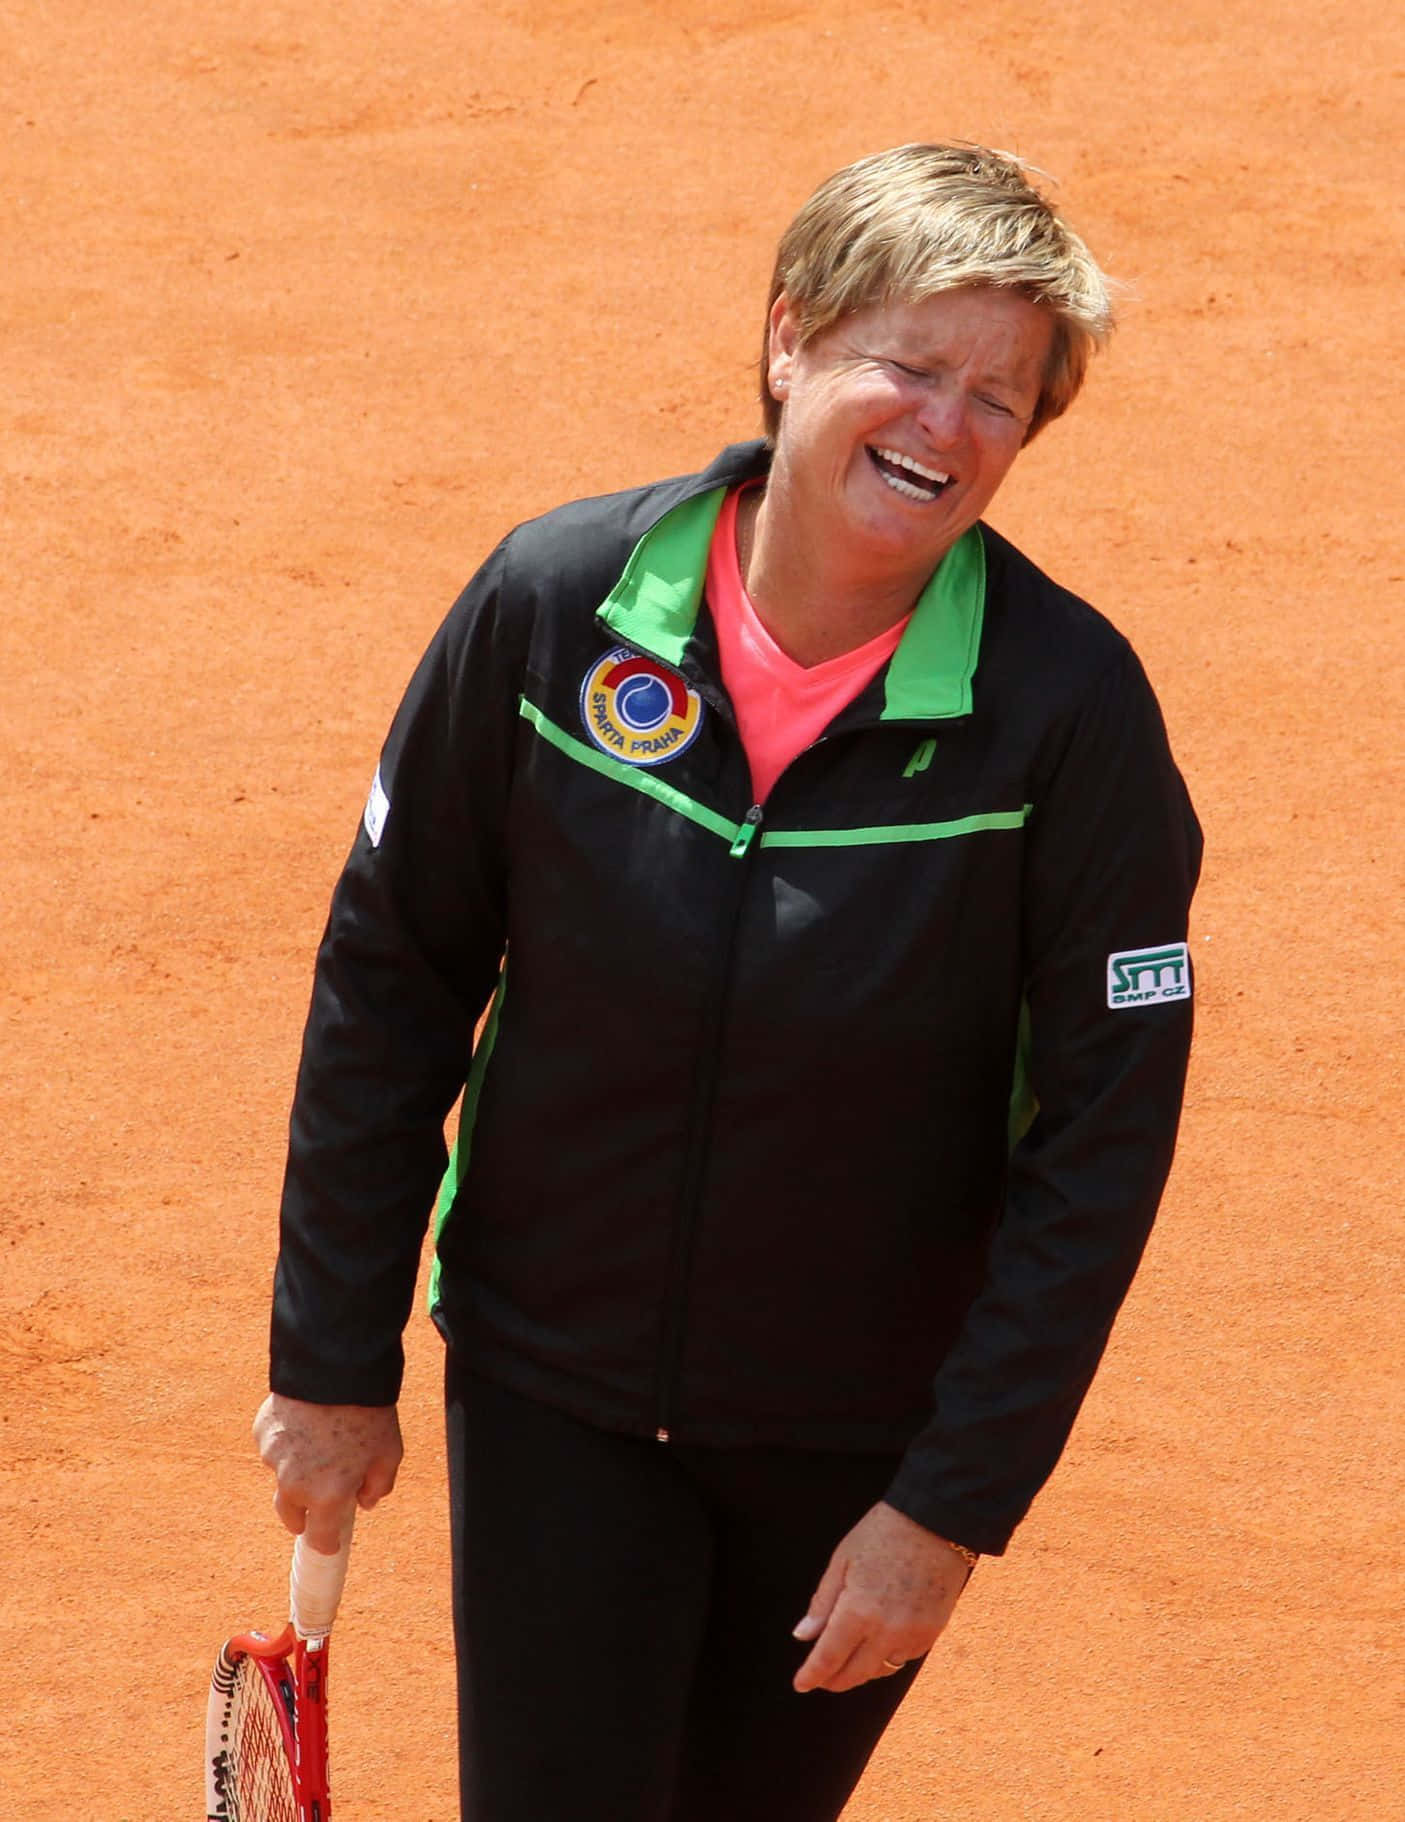 Hana Mandlíková smiler, mens hun holder en tennisracket Wallpaper